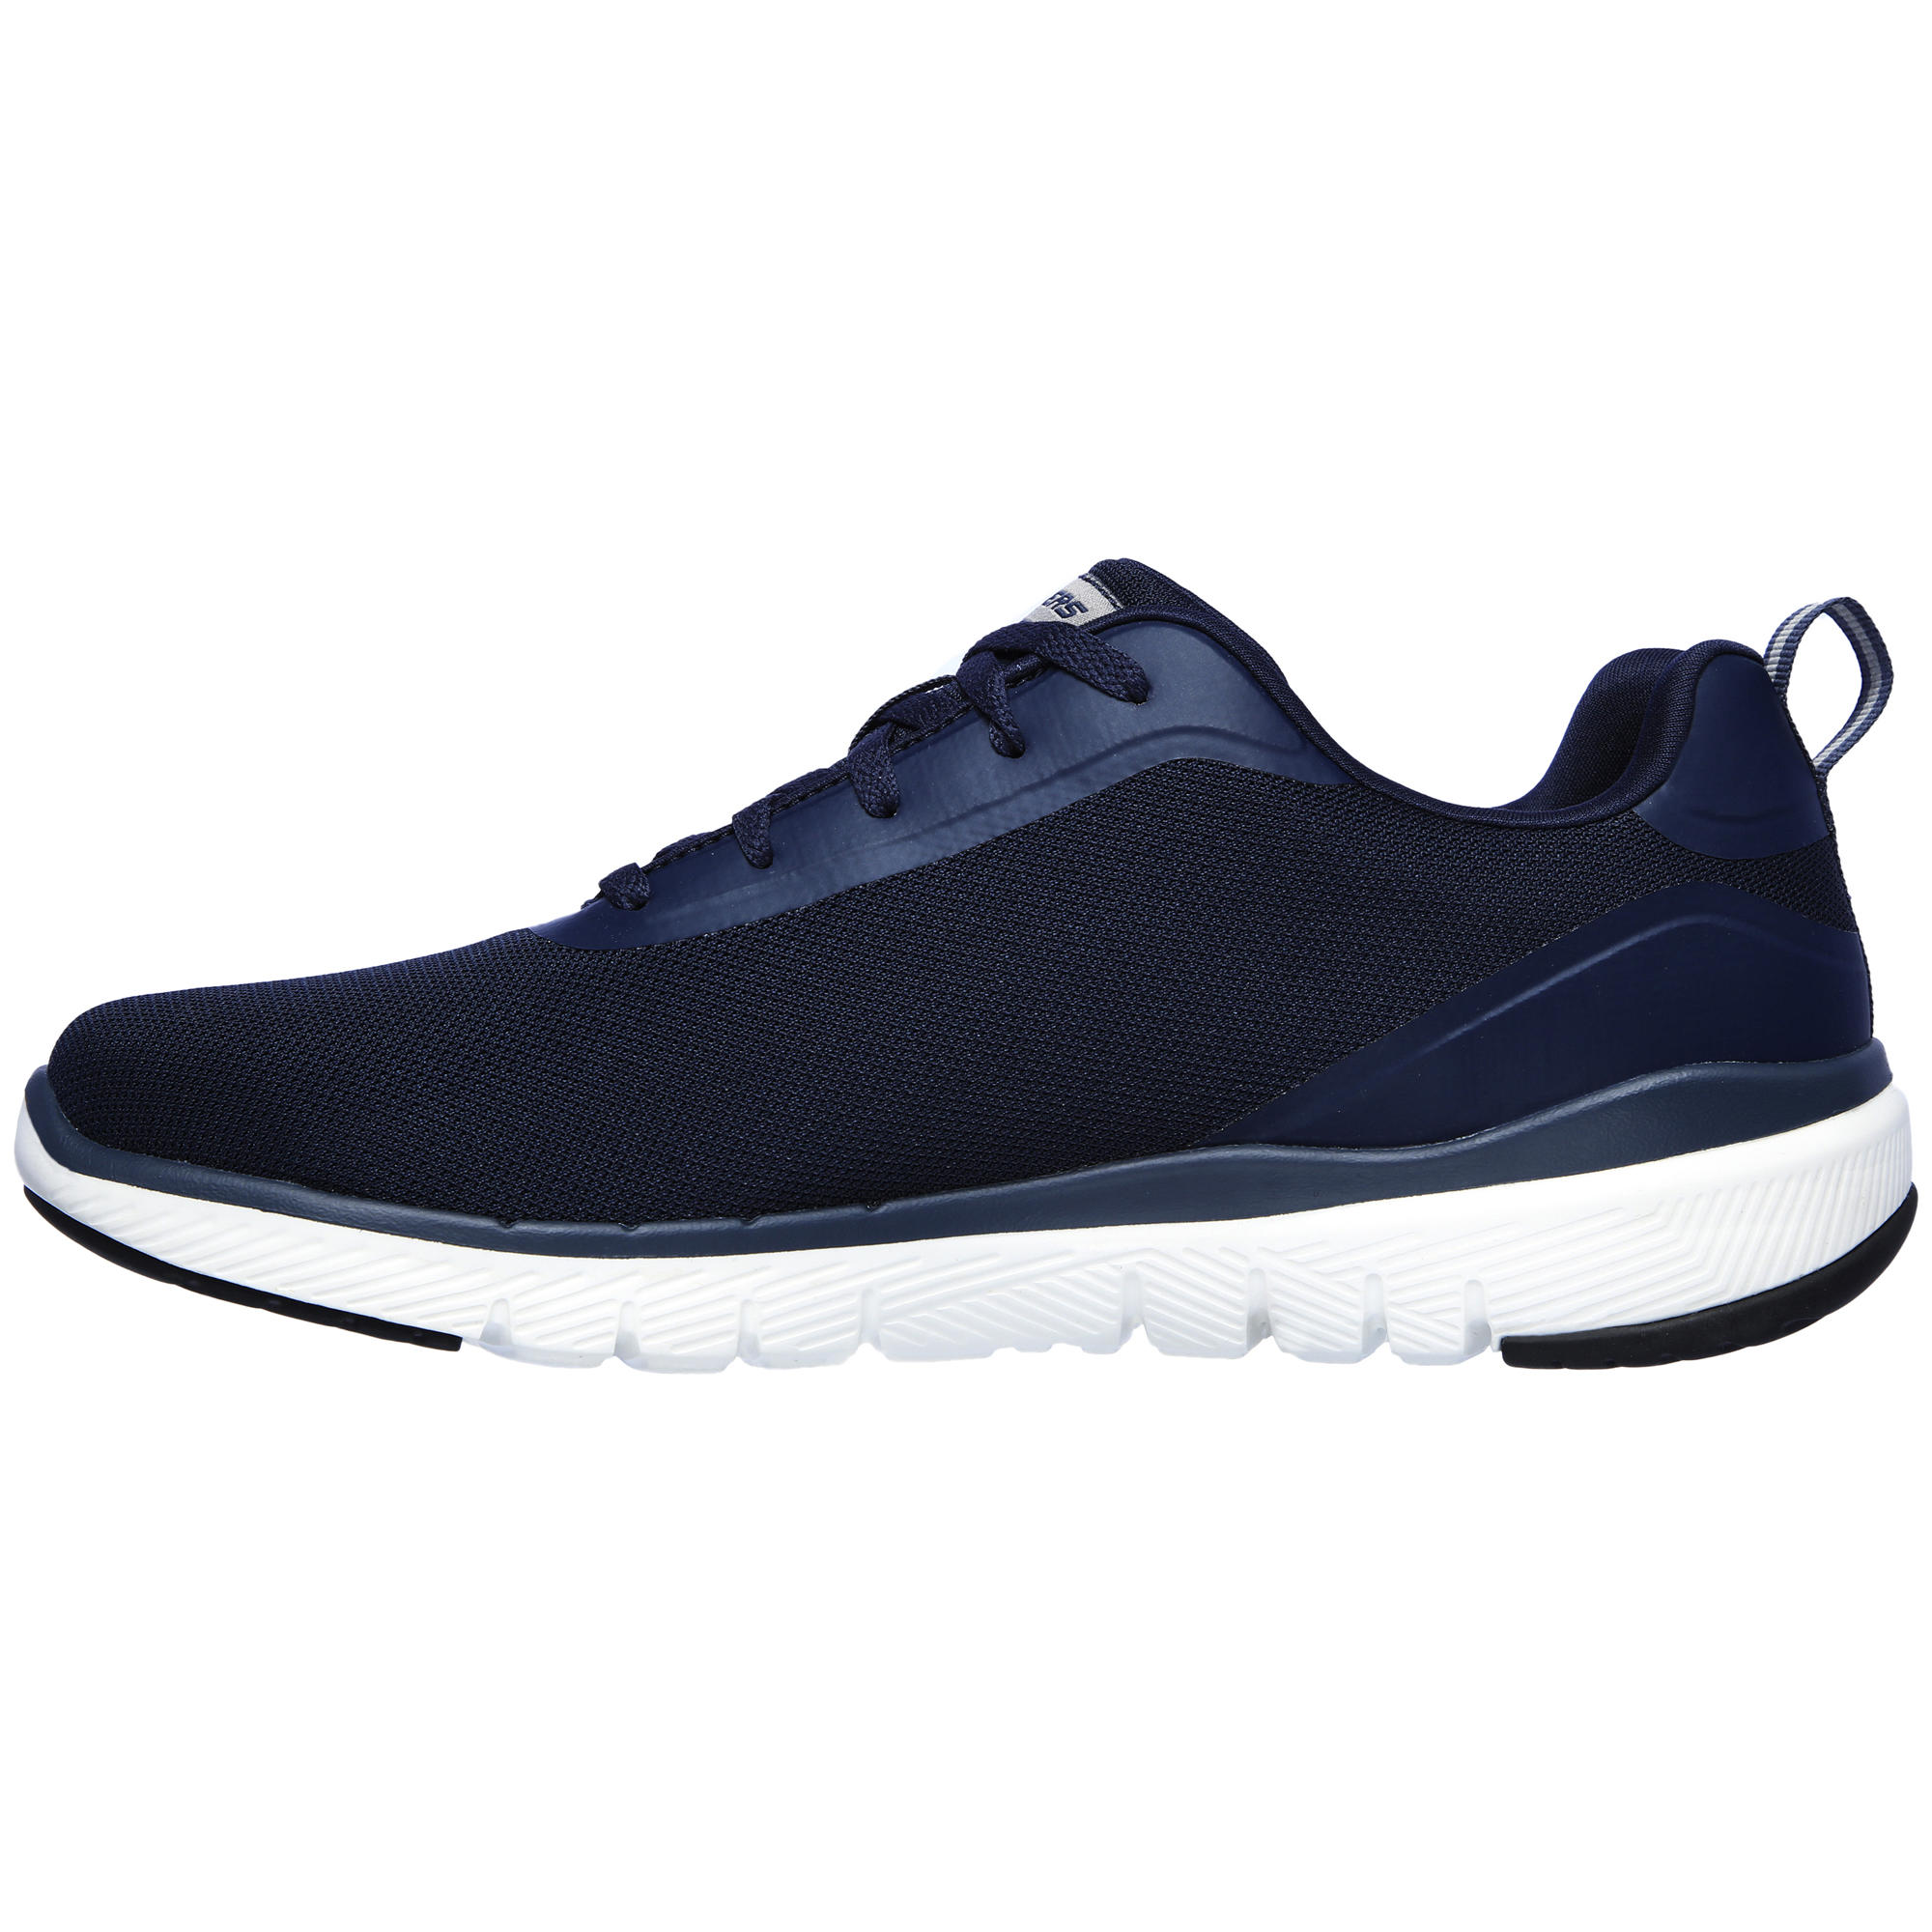 Men's Fitness Walking Shoes Skechers Flex Appeal - blue 3/5